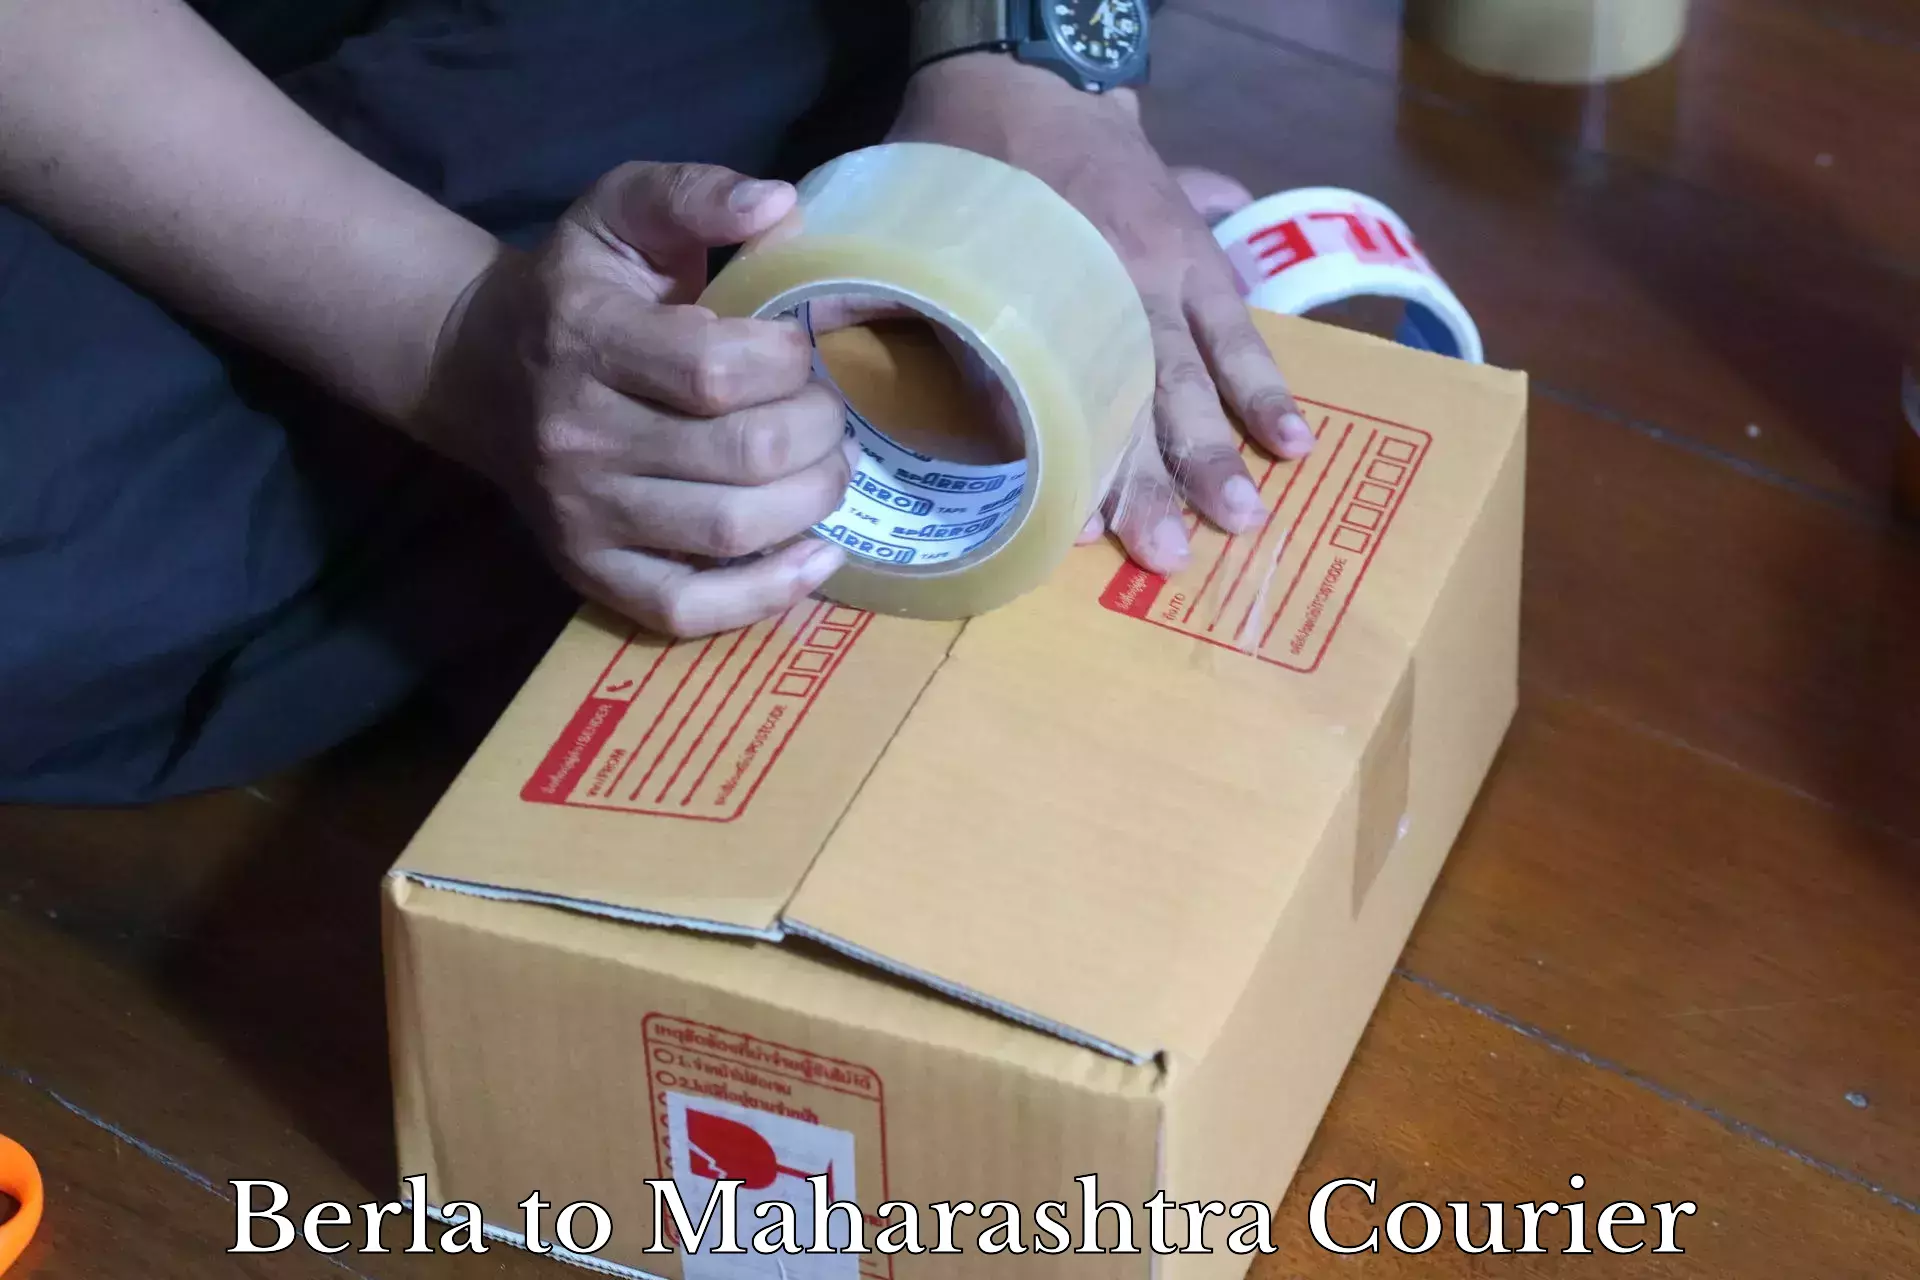 24/7 courier service Berla to Maharashtra